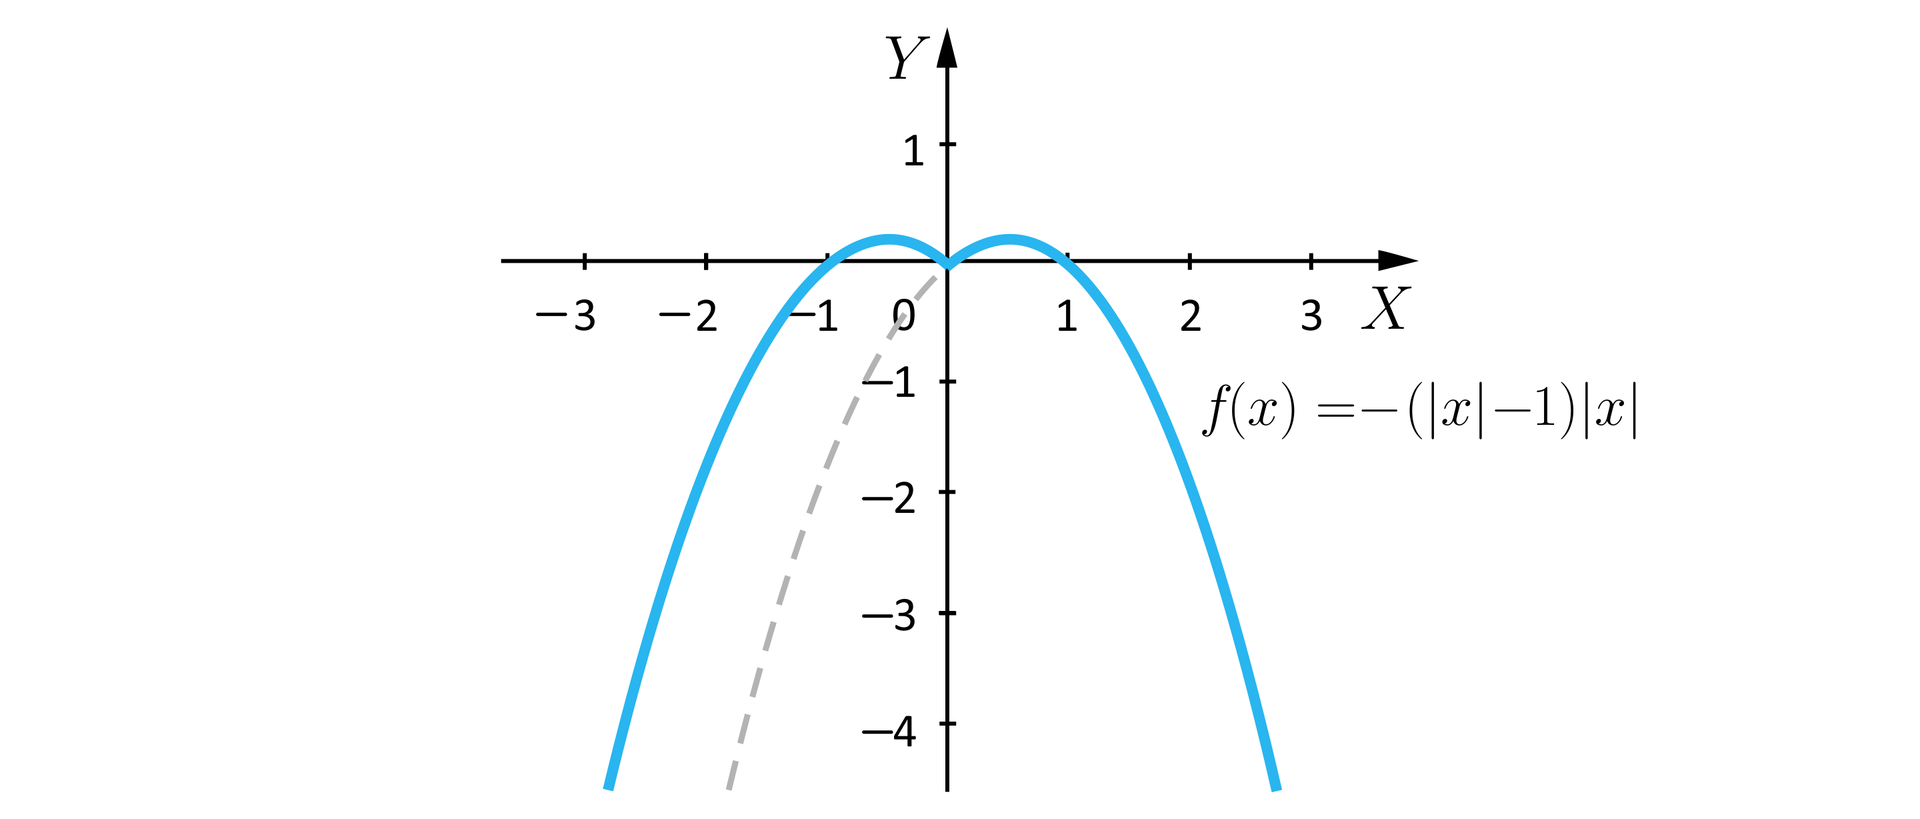 Ilustracja przedstawia układ współrzędnych z poziomą osią x od minus 3 do 3 i pionową osią y od minus 4 do jeden. W układzie zaznaczono wykres o równaniu fx=−x−1x. Wykres ma kształt przypominający dwie połączone ze sobą parabole o ramionach skierowanych w dół. Wykres rozpoczyna się w trzeciej ćwiartce układu i biegnie po łuku przecinając oś x w punkcie nawias minus jeden średnik zero zamknięcie nawiasu do punktu znajdującego się w drugiej ćwiartce układu, dalej biegnie po łuku do punktu nawias zero średnik zero zamknięcie nawiasu, stąd biegnie po łuku do punktu znajdującego się w pierwszej ćwiartce układu, skąd biegnie po łuku przecinając oś x w punkcie jeden średnik zero zamknięcie nawiasu i wychodzi poza płaszczyznę układu w czwartej ćwiartce. Ze środka układu współrzędnych linią przerywaną poprowadzono łuk, równoległy do pierwszego fragmentu wykresu.